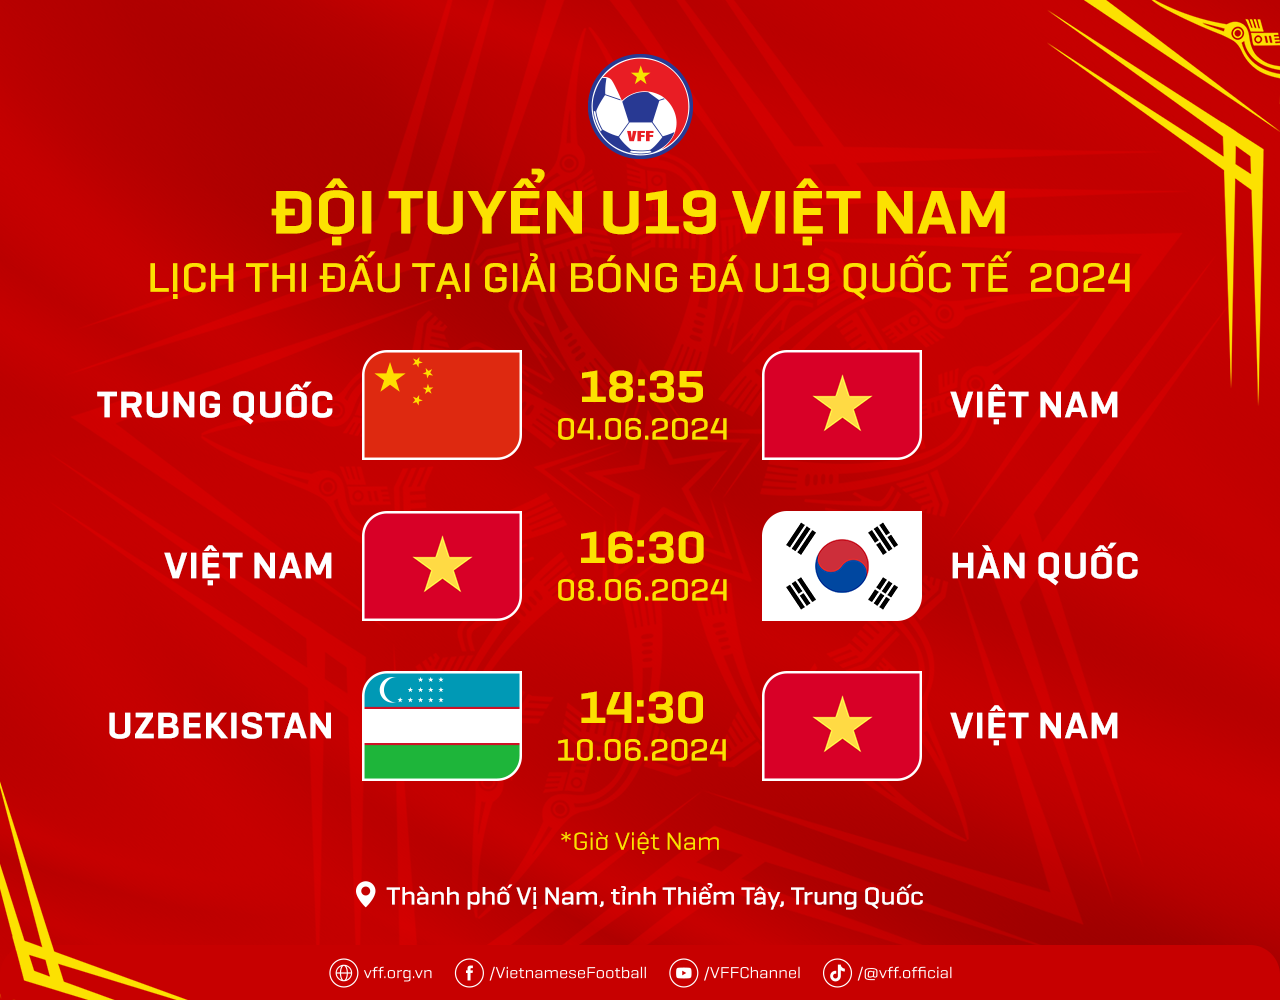 Đội tuyển U19 Việt Nam chốt danh sách 23 cầu thủ, lên đường tham dự Giải U19 quốc tế 2024